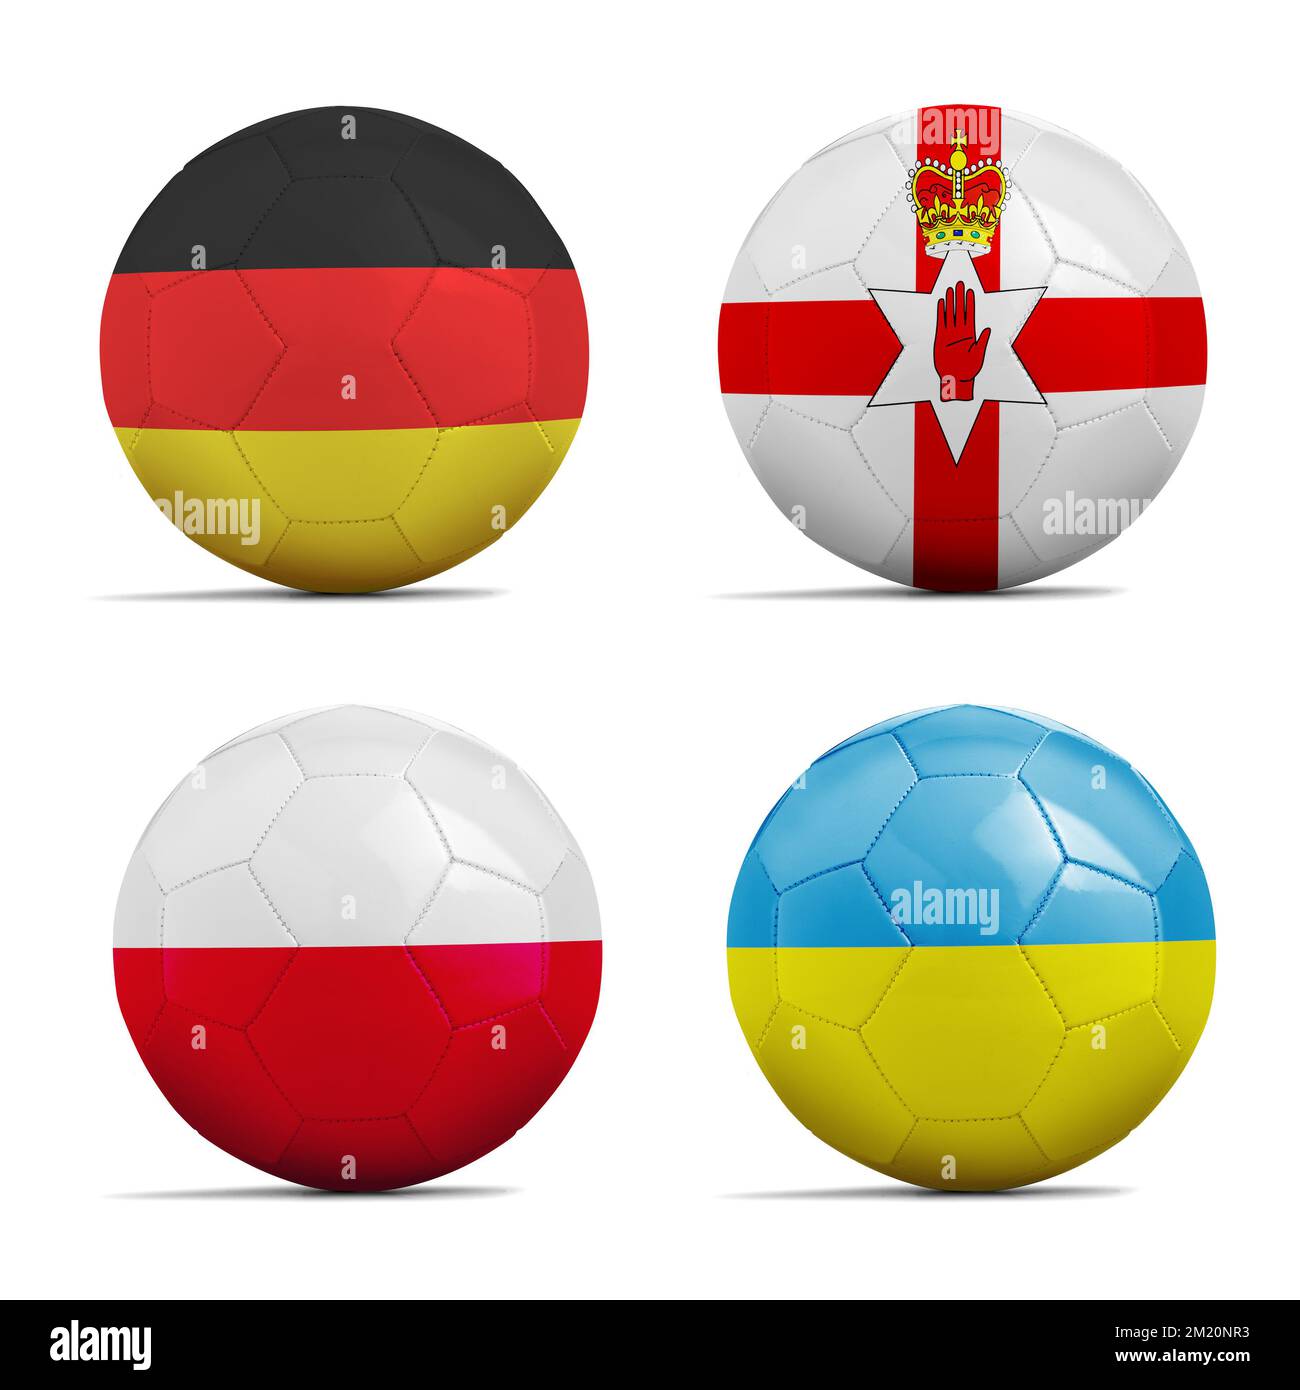 Quattro palloni da calcio con gruppo C flag team, calcio Euro Cup 2016. Foto Stock